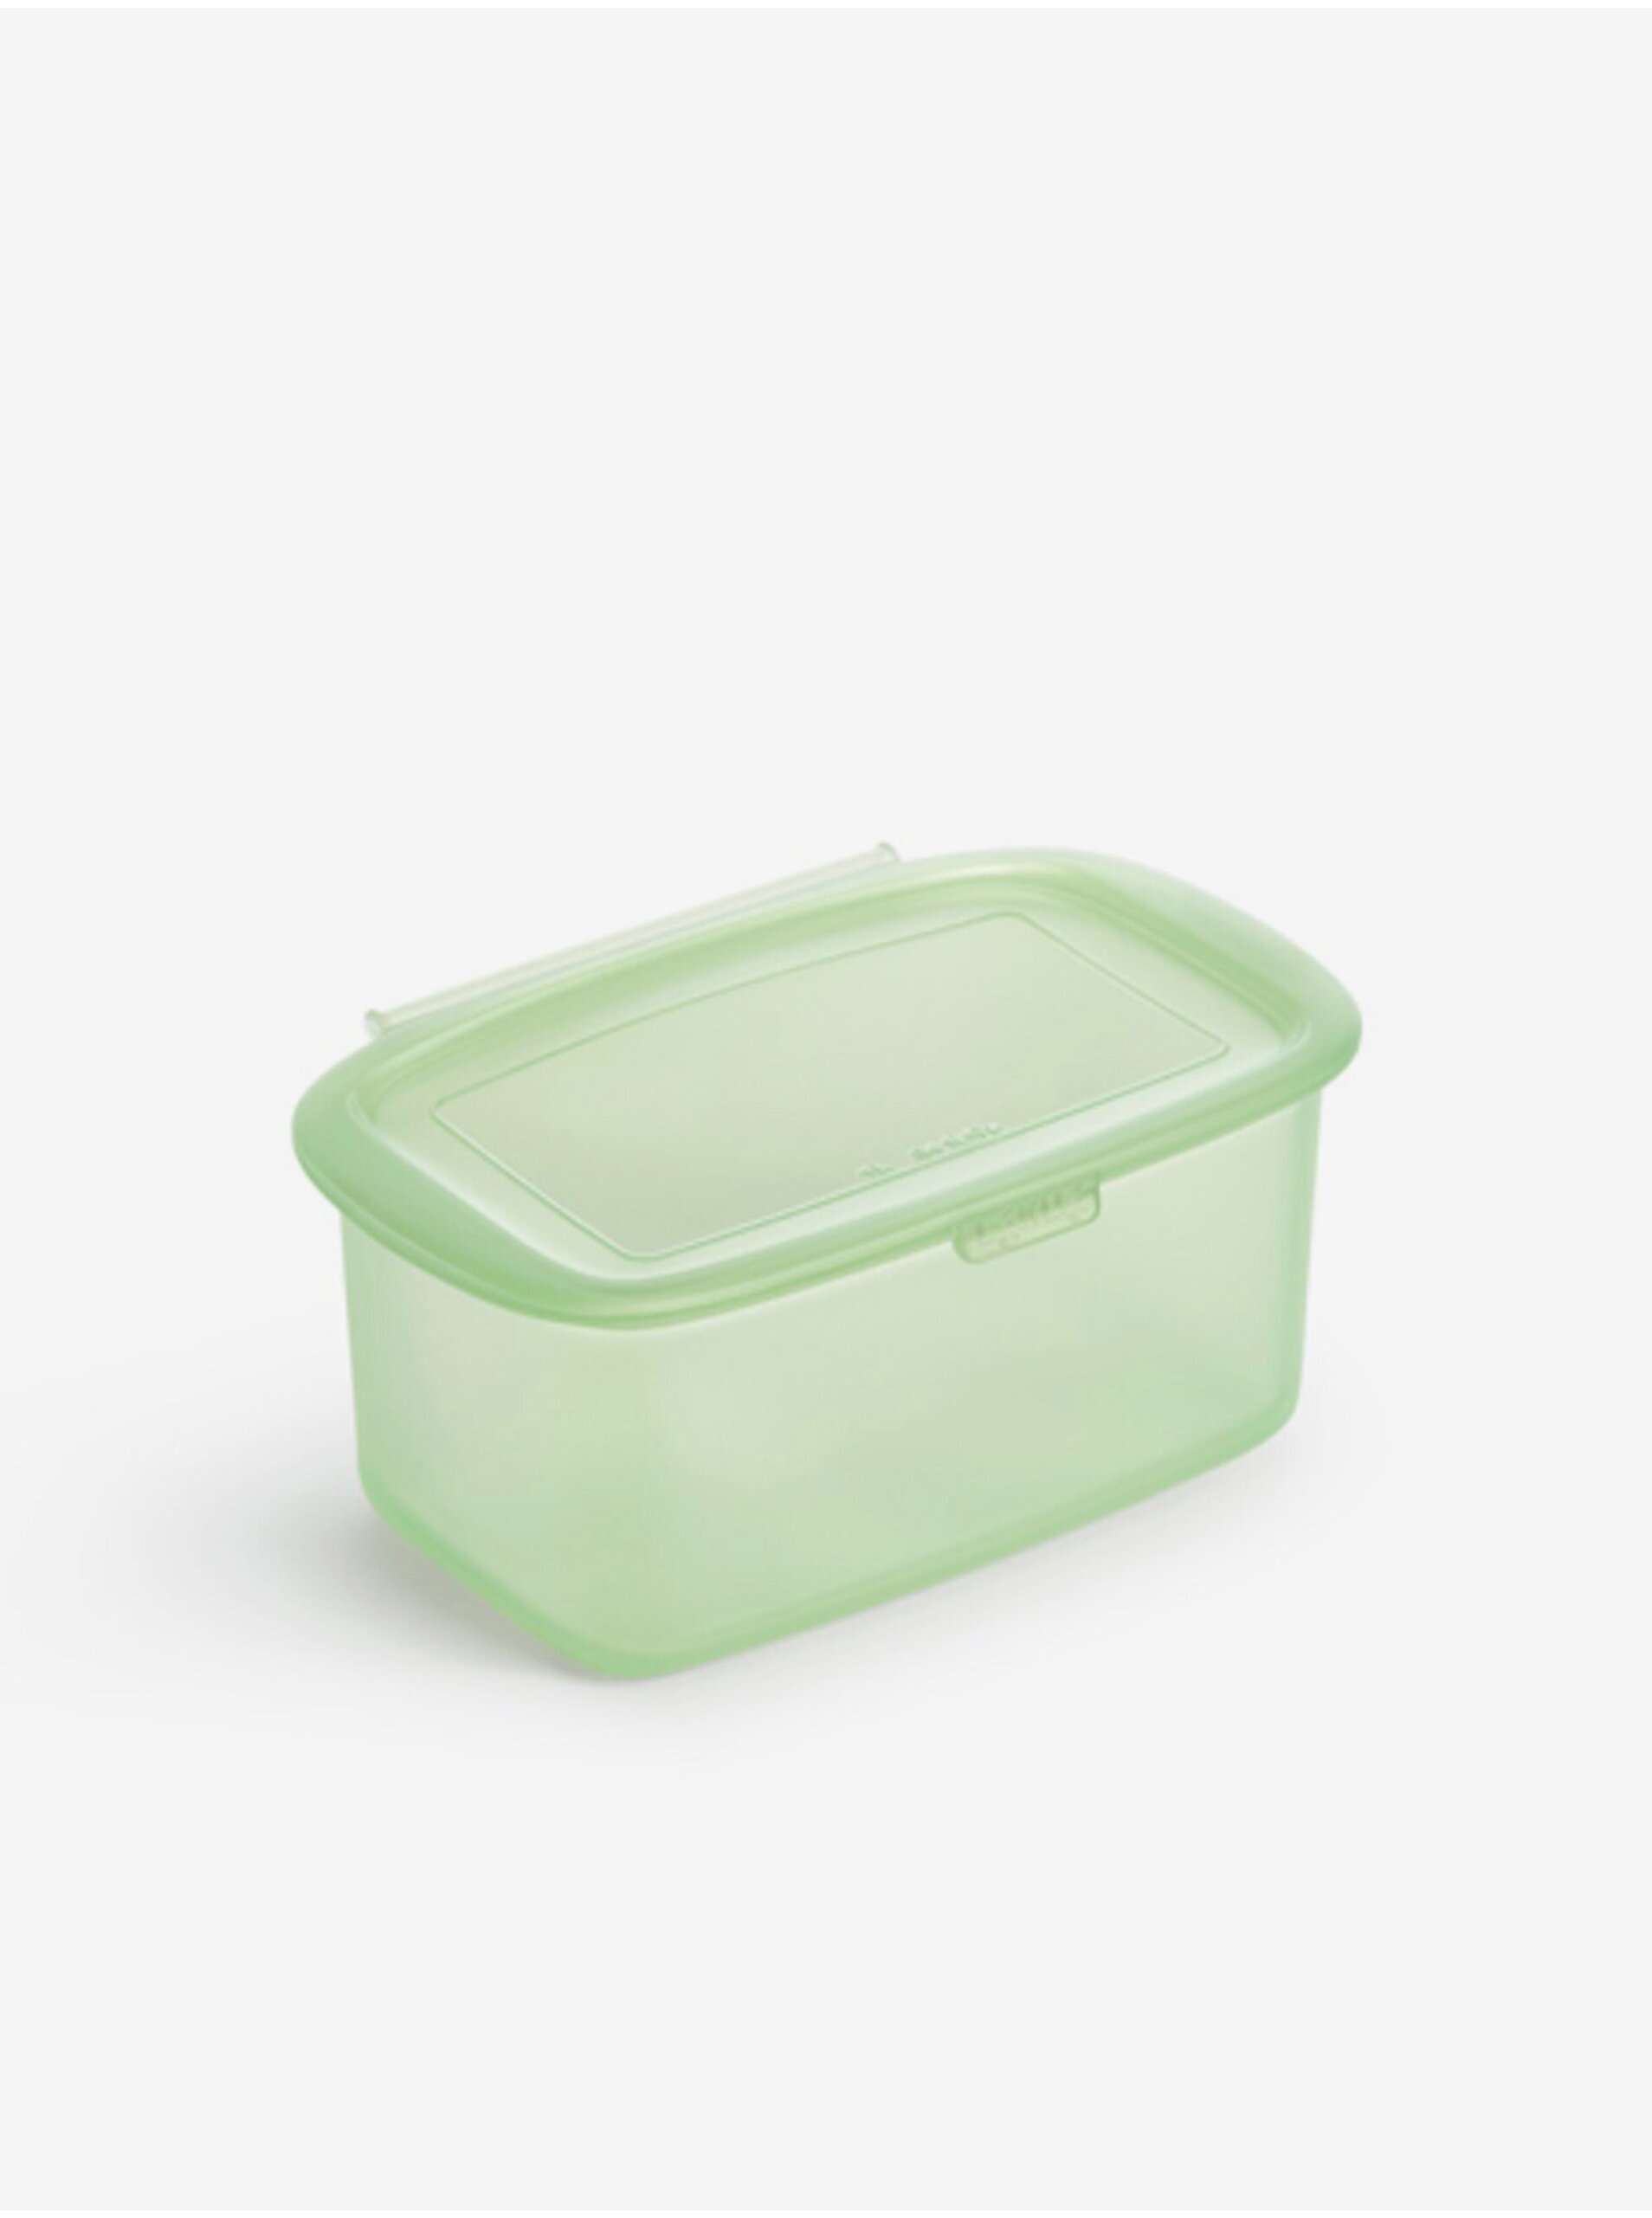 Lacno Zelený silikónový box na skladovanie potravín Lékué (1000 ml)